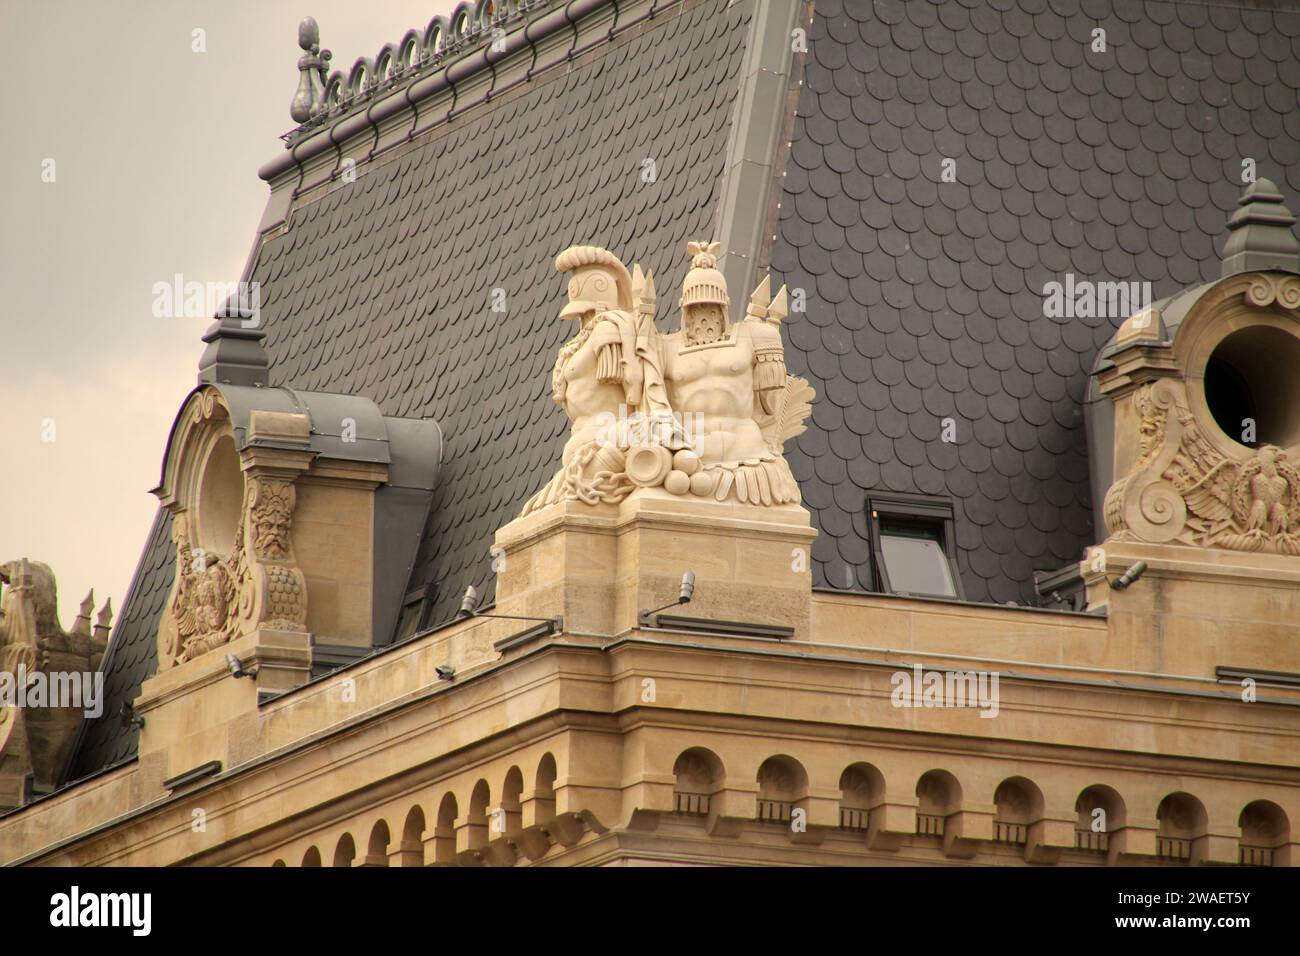 Una bella struttura con statue ornamentali in cima alla sua facciata a Parigi, in Francia Foto Stock